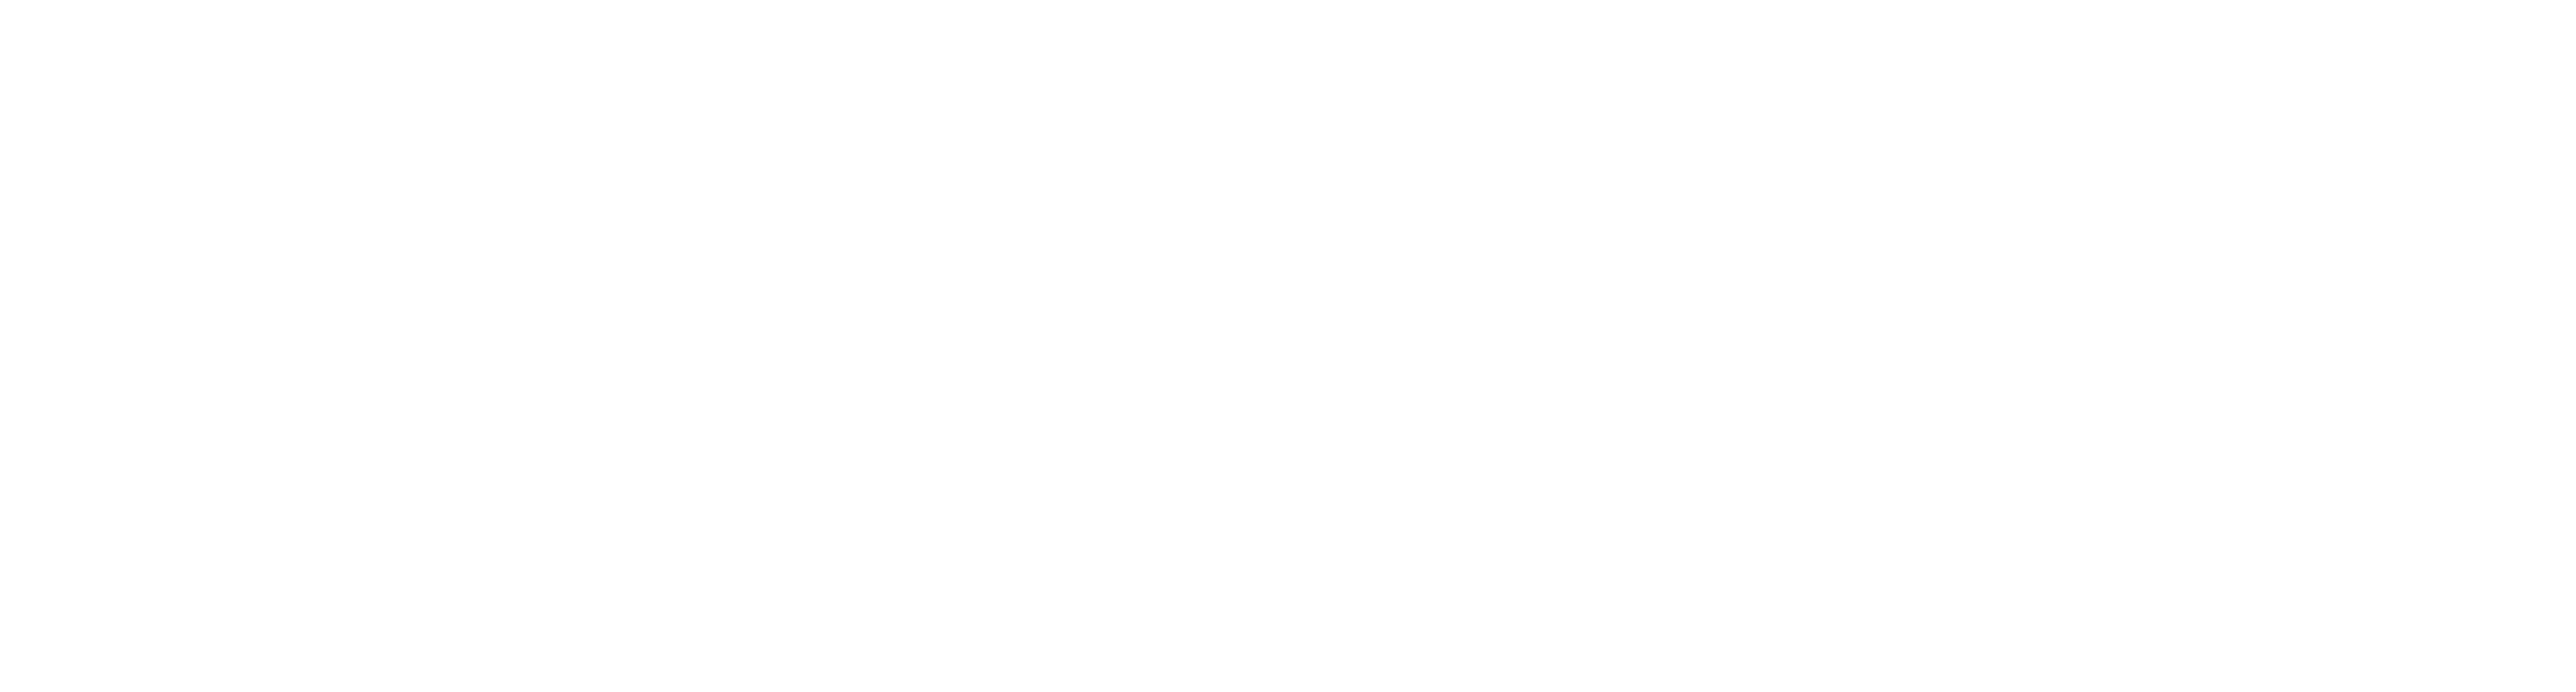 Redsea farms logo